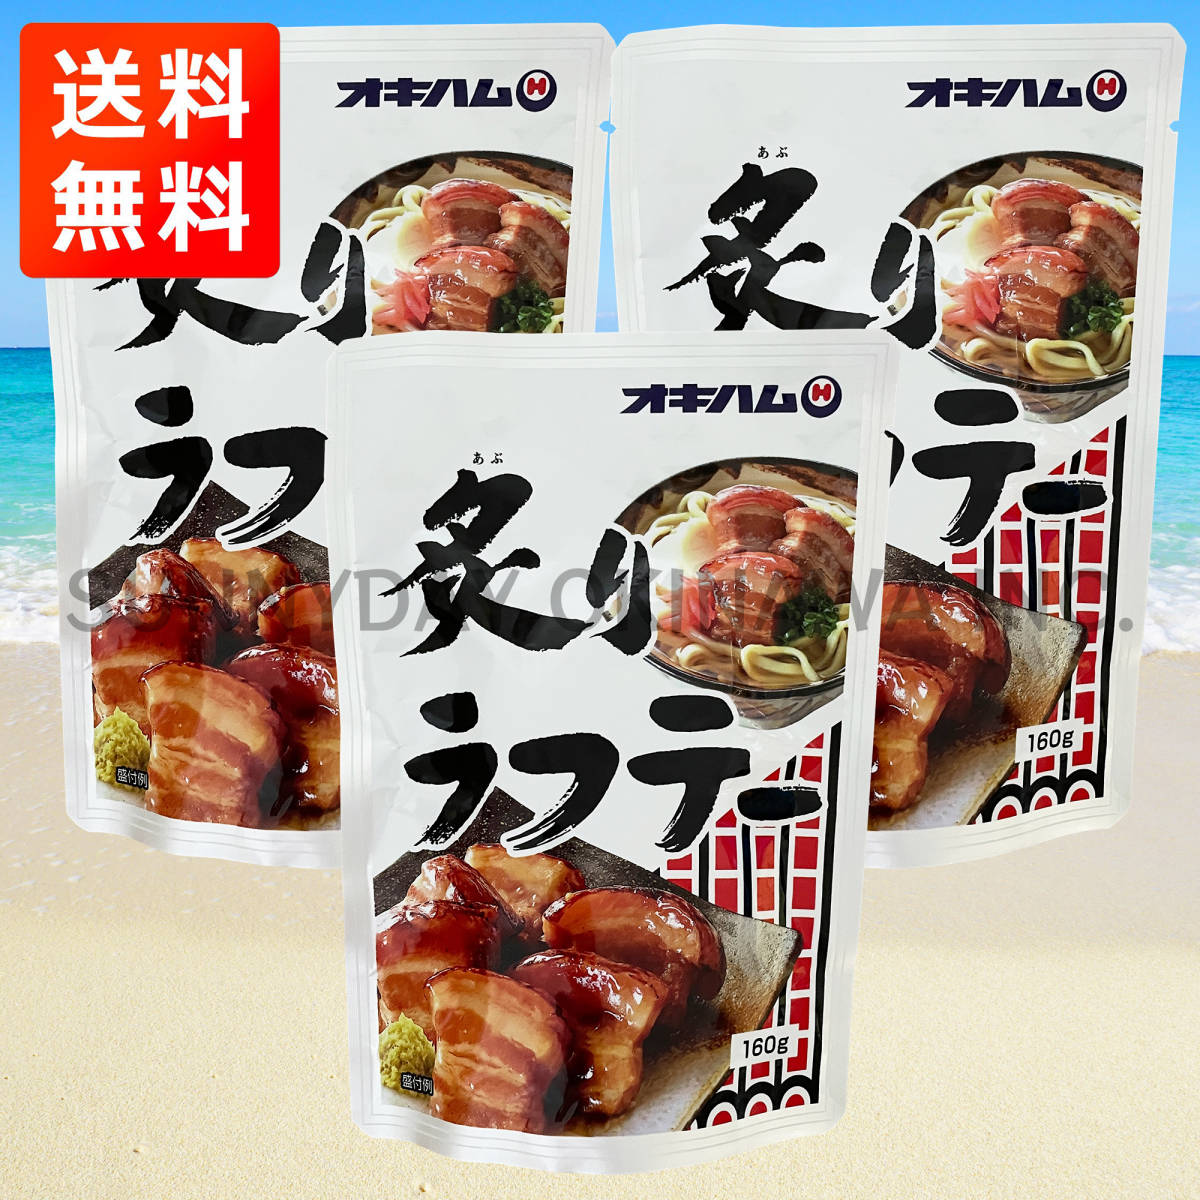 .. рагу рафуте 3 пакет oki ветчина свинья. рагу из мяса или рыбы в кубиках три листов мясо .... Okinawa соба . земля производство ваш заказ 